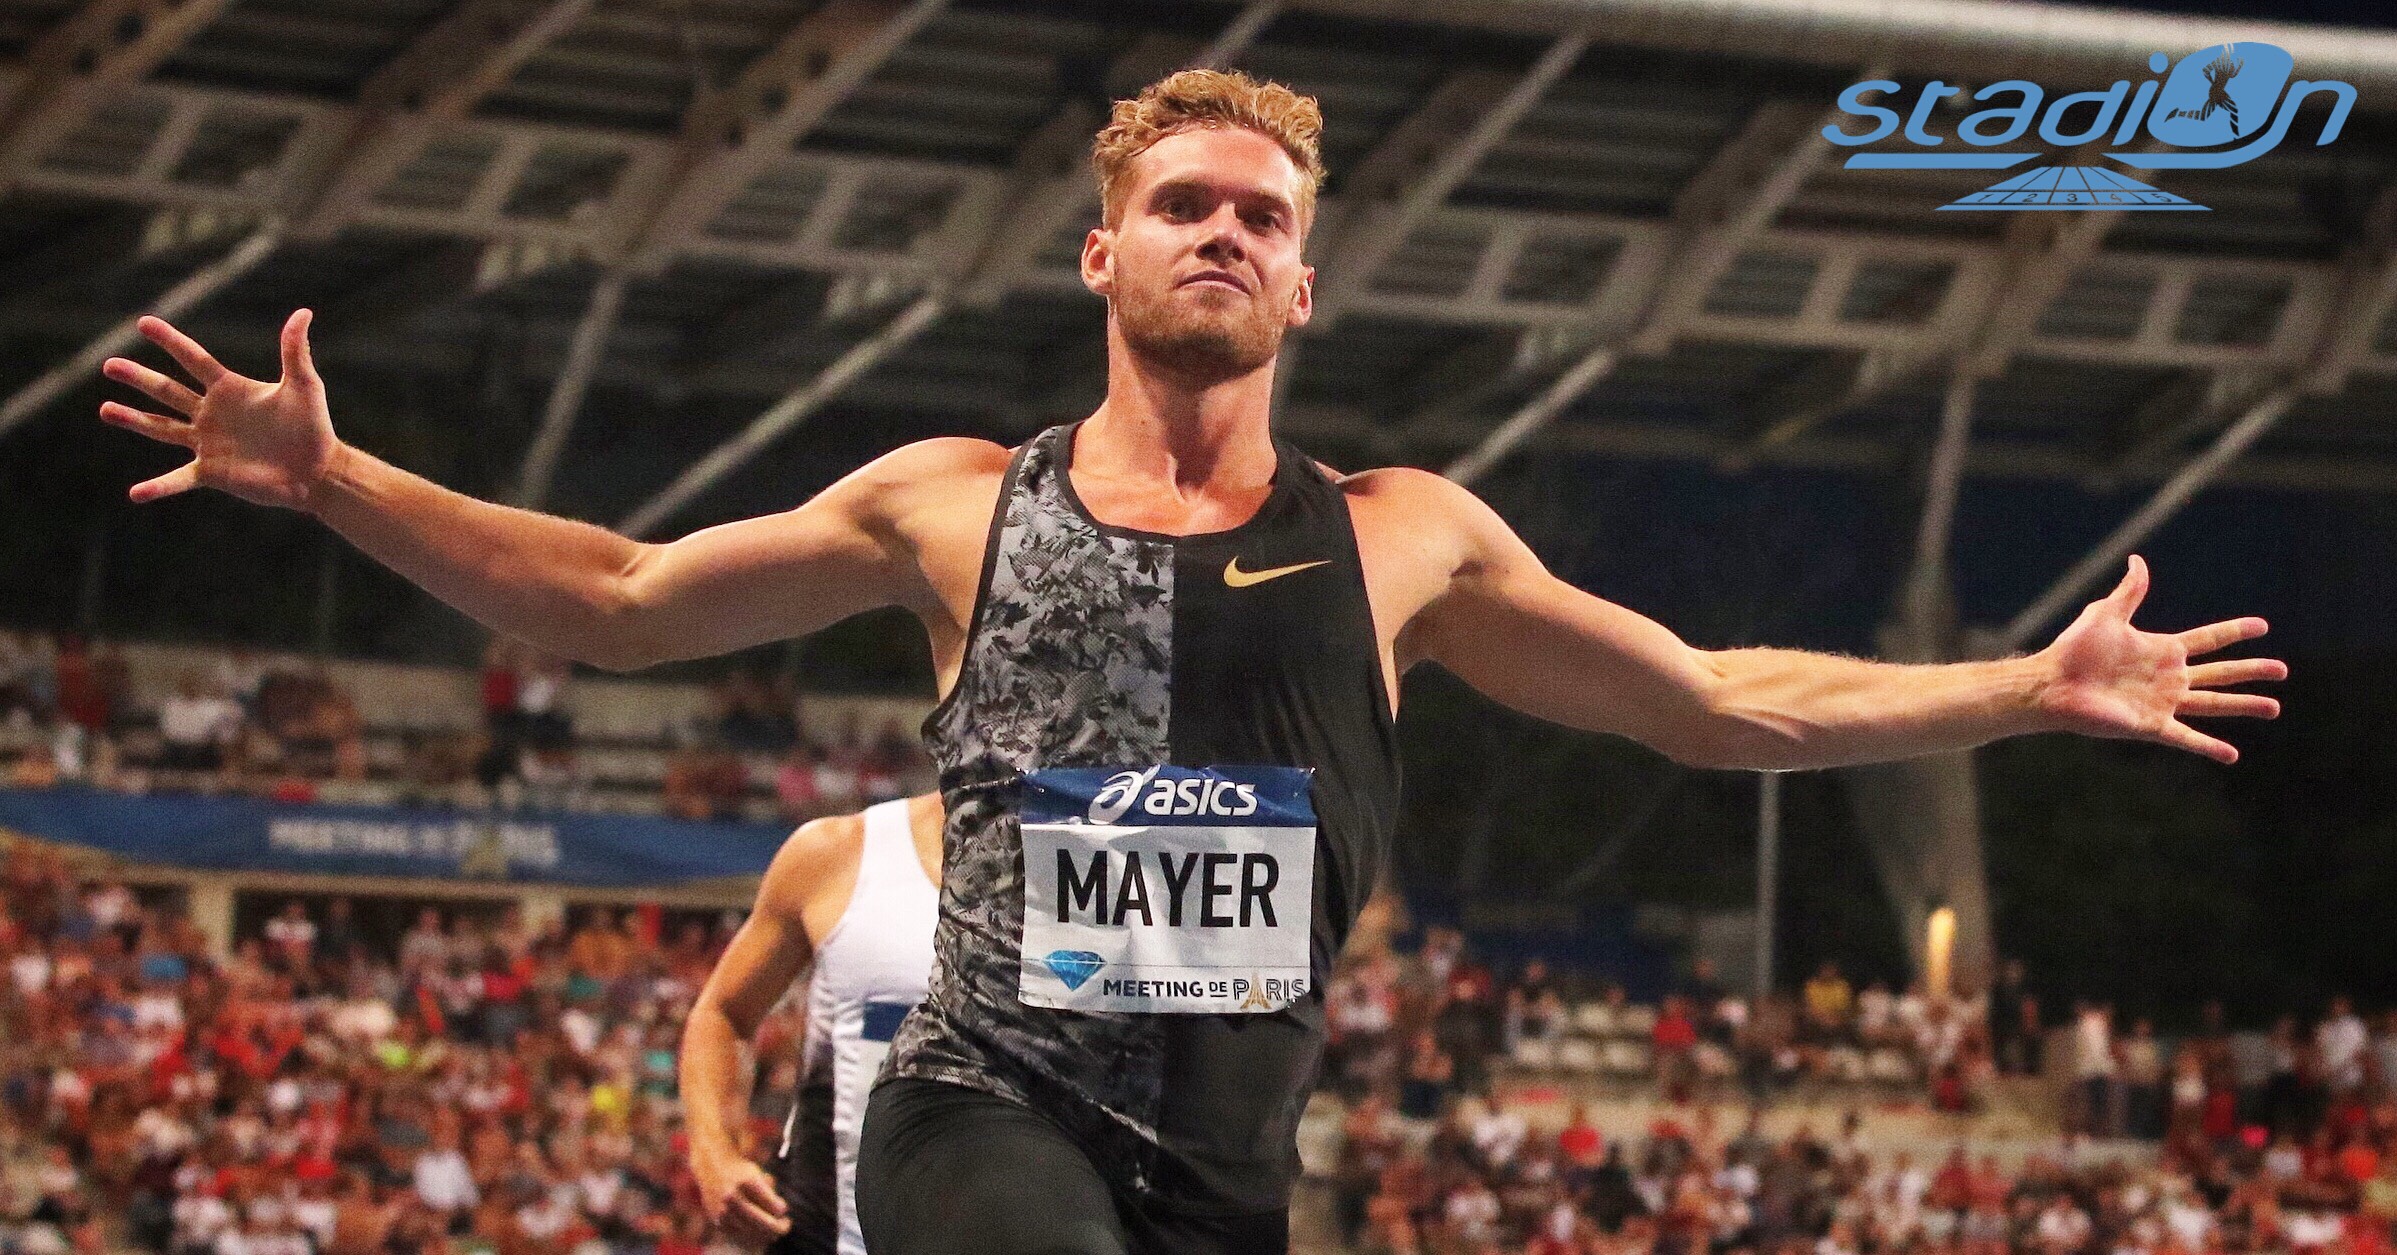 Dans des propos accordés à RMC ce dimanche, Kevin Mayer, recordman du monde du décathlon, pense que les Jeux olympiques 2020 à Tokyo seront reportés.